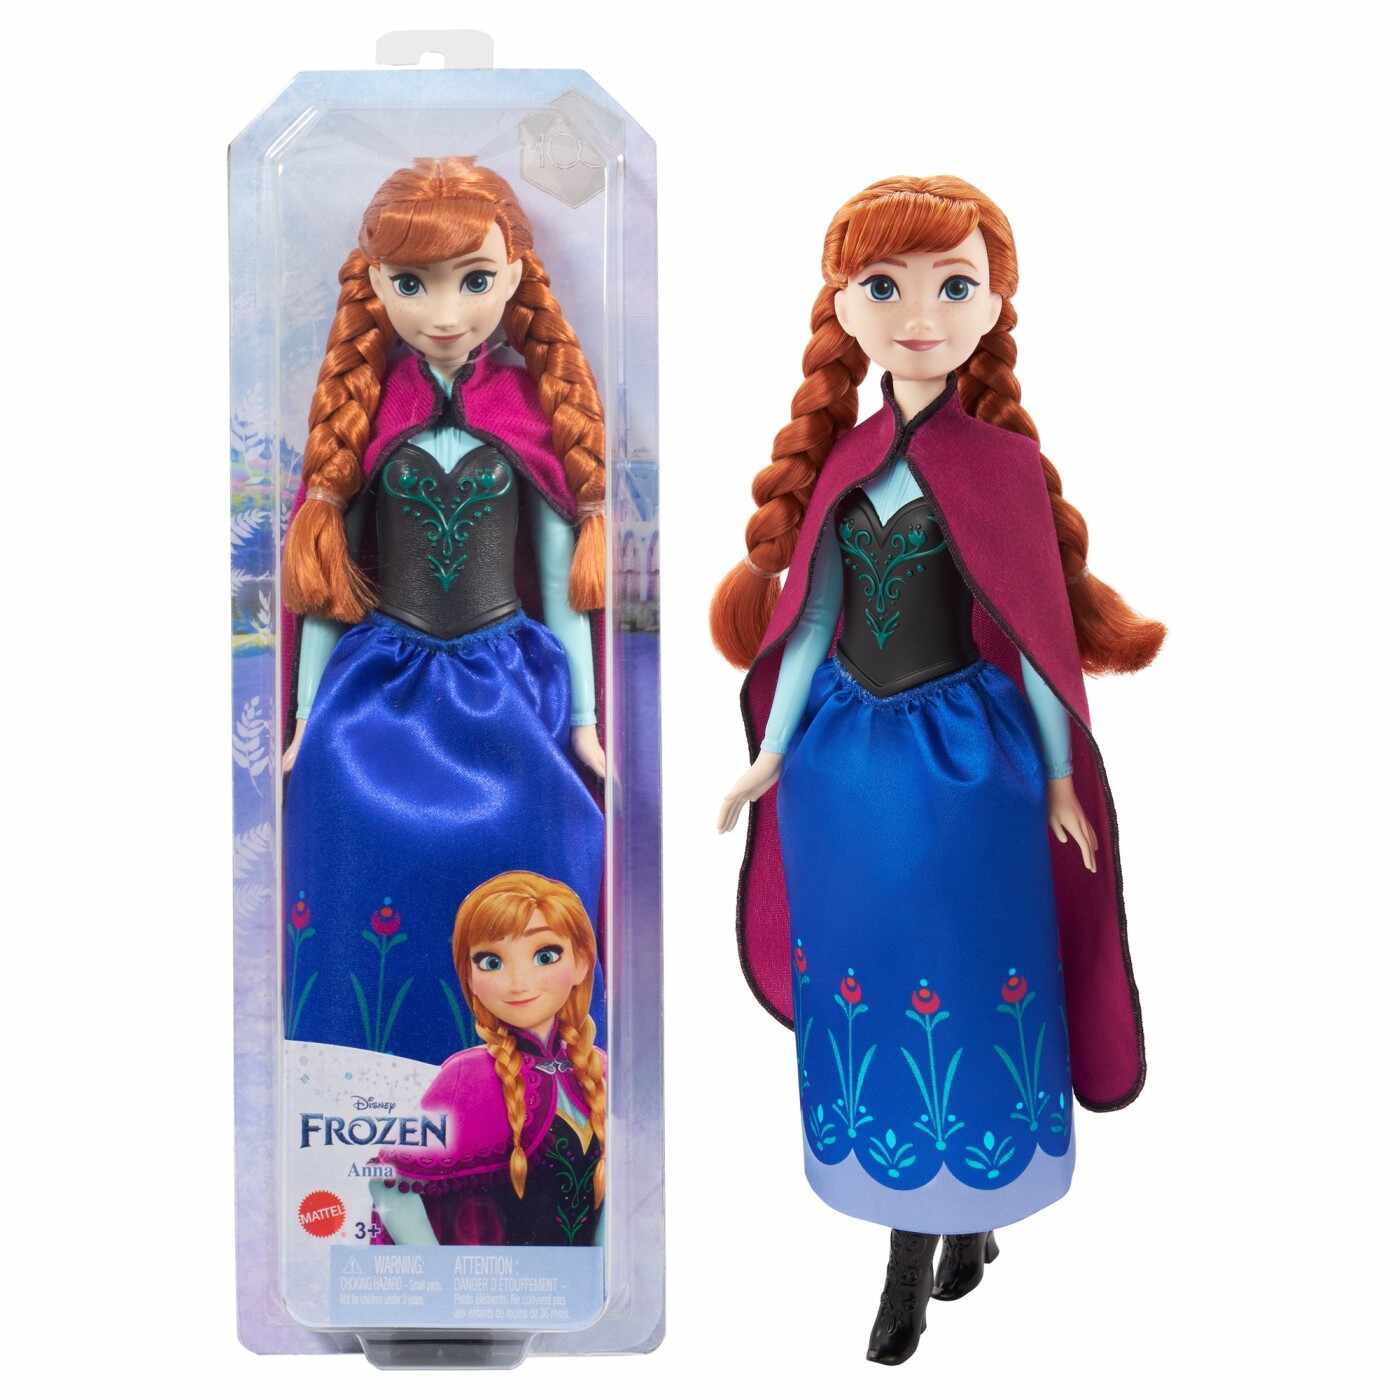 Papusa Disney Frozen - Anna cu codite | Mattel